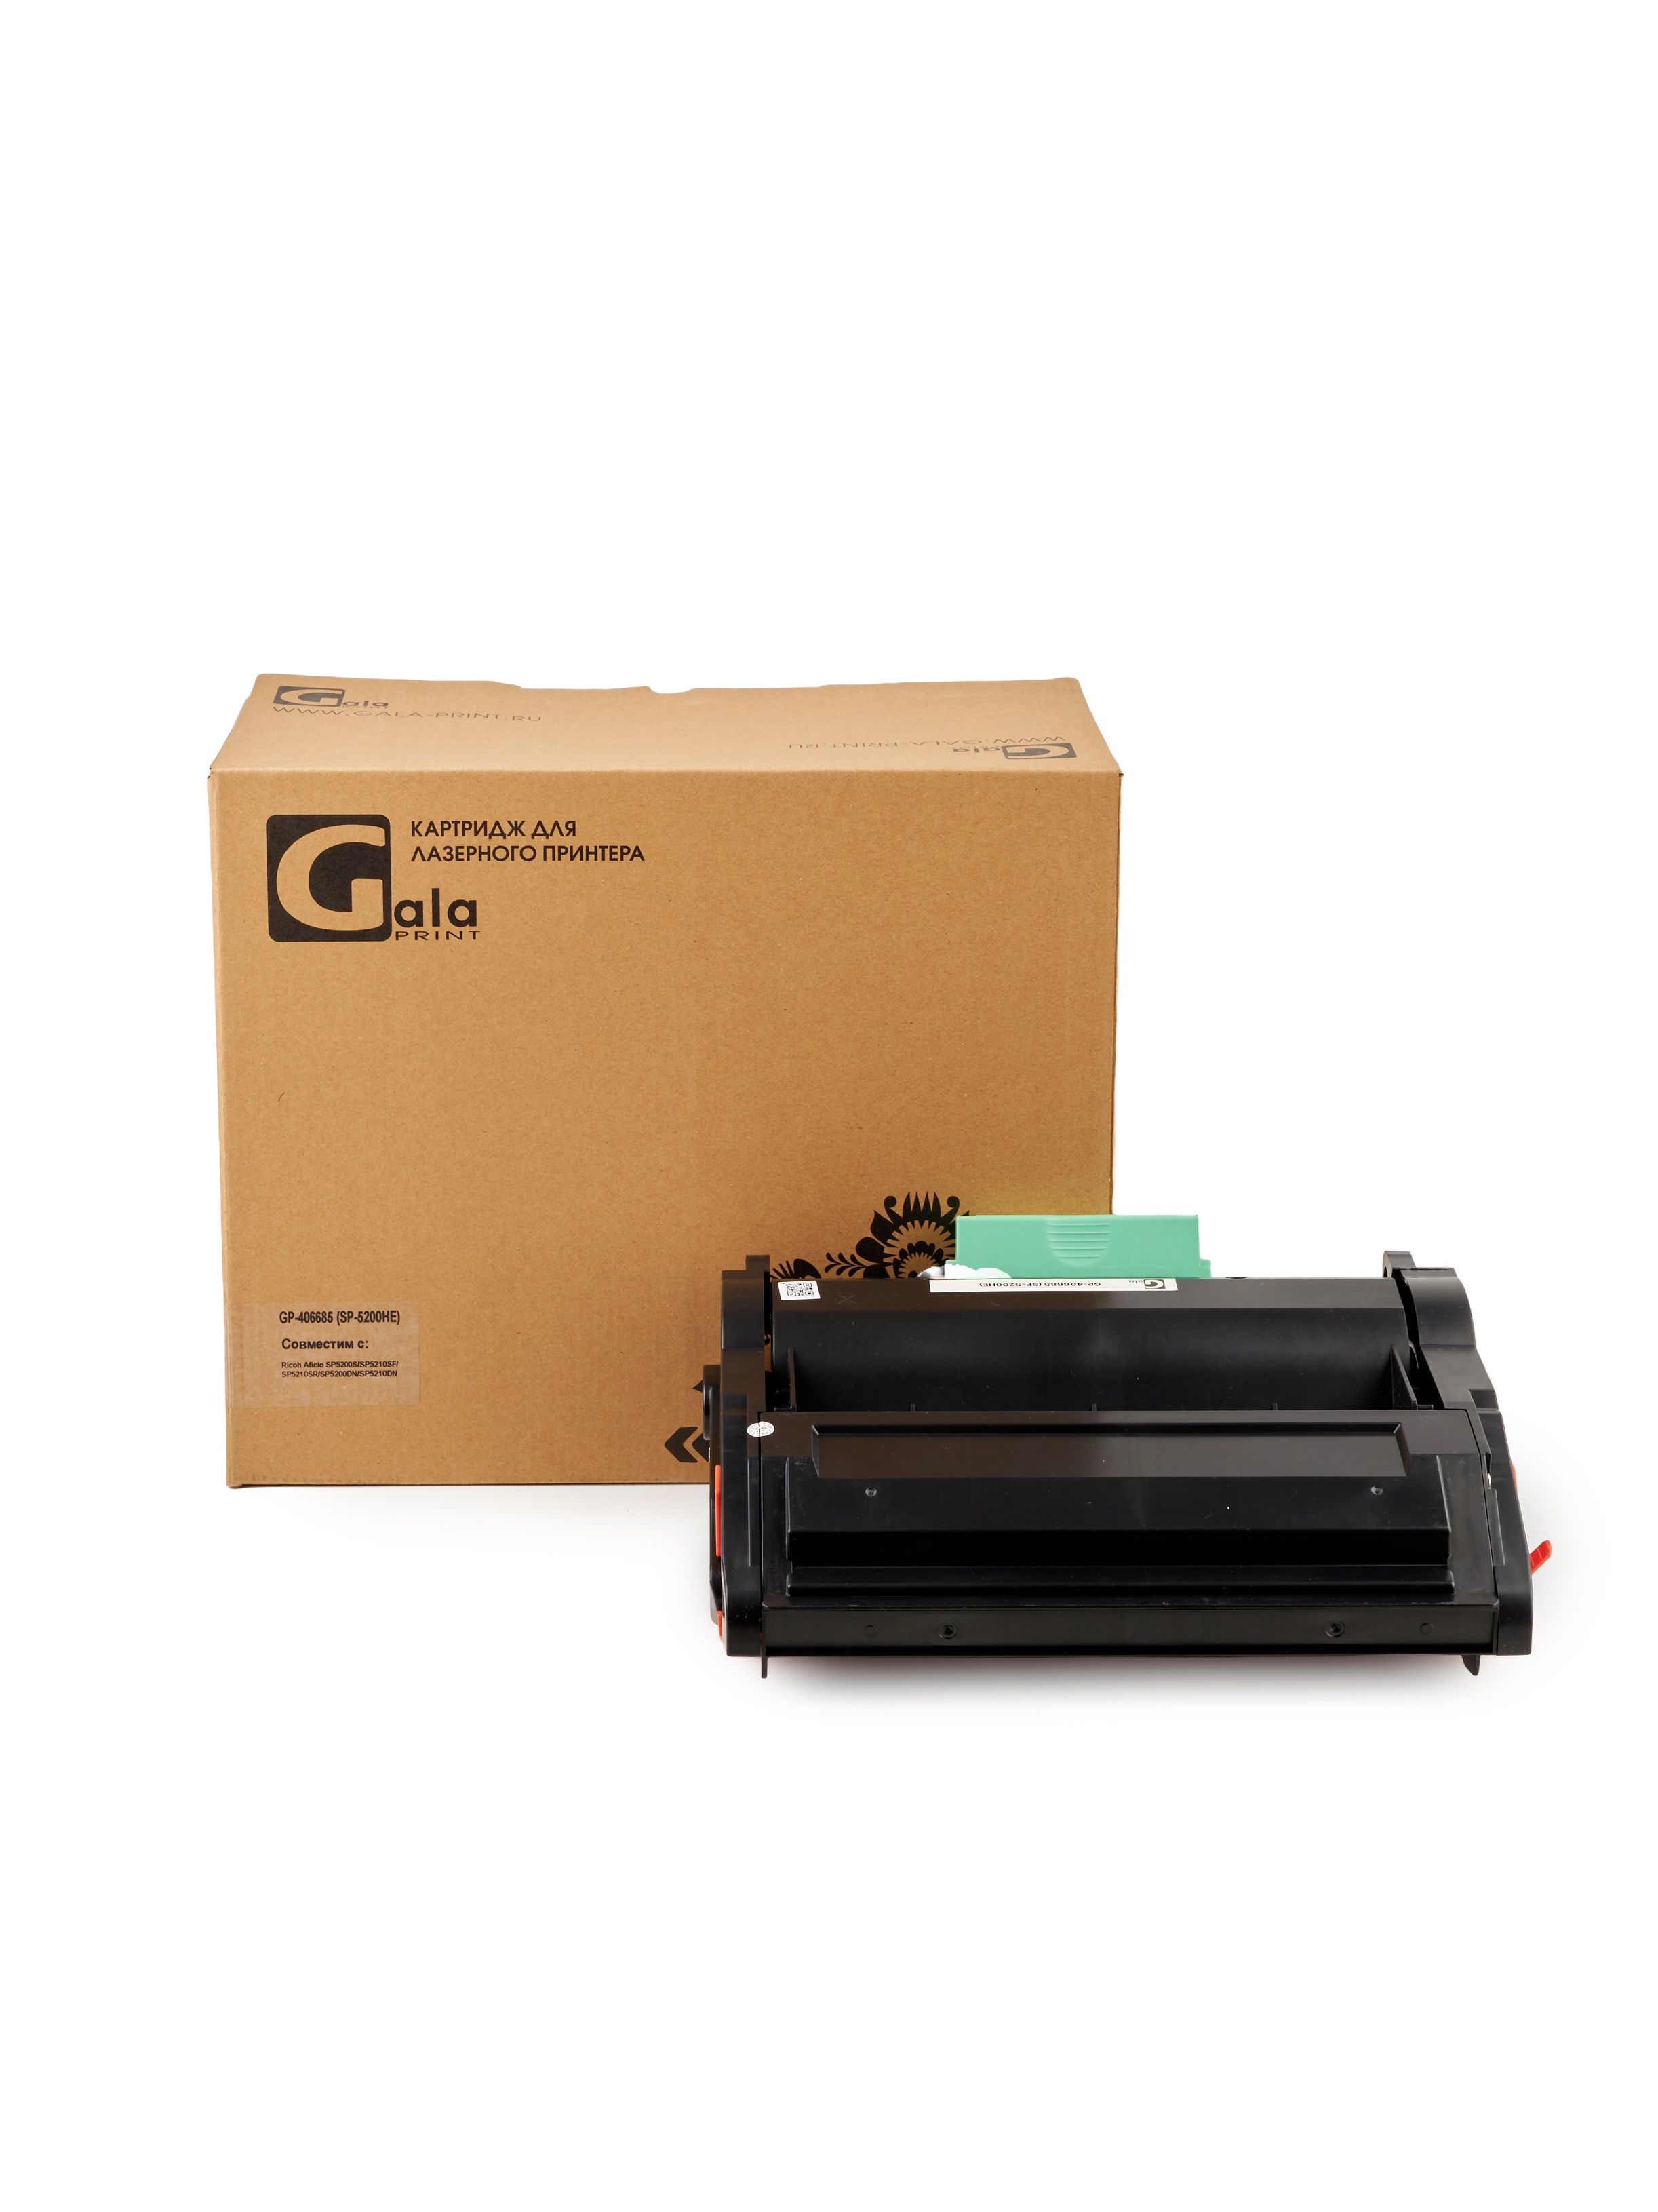 Картридж GP-406685 (SP-5200HE) для принтеров Ricoh Aficio SP5200S/SP5210SF/SP5210SR/SP5200DN/SP5210DN 25000 копий GalaPrint